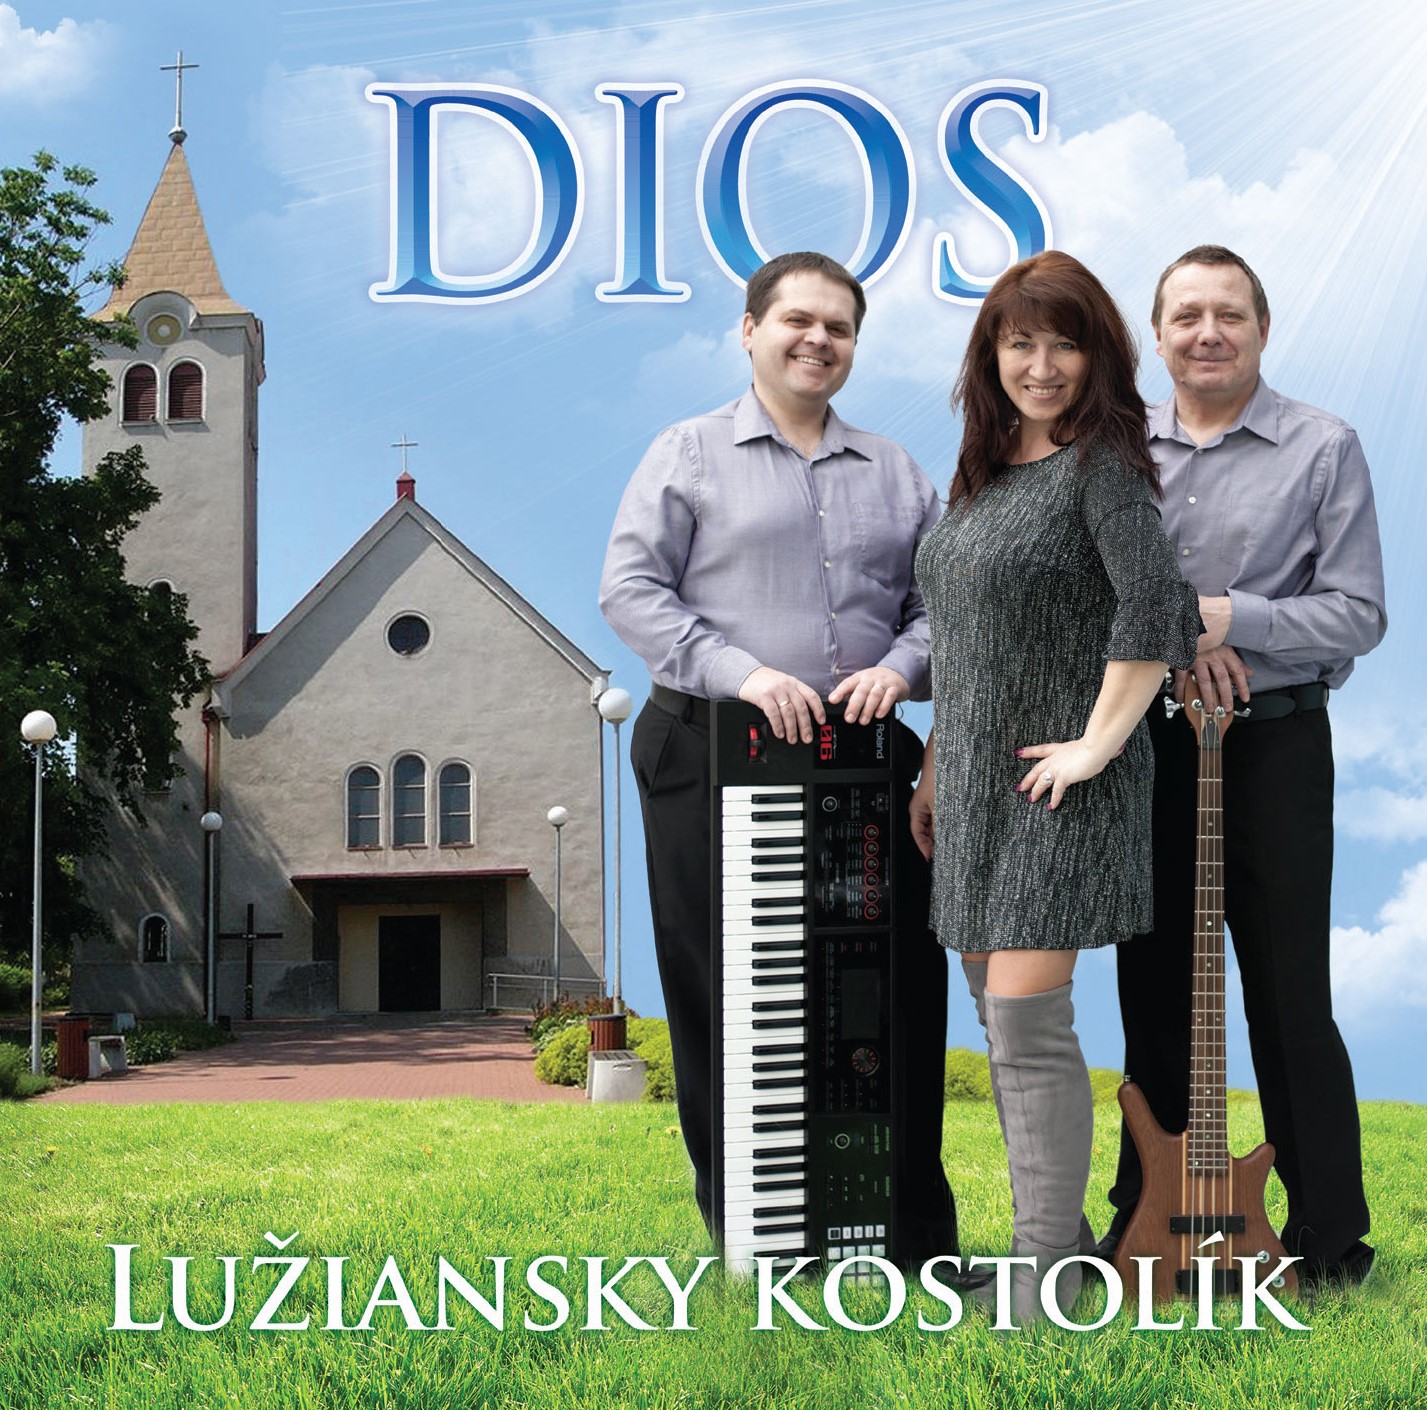 Dios - Lužiansky kostolik 